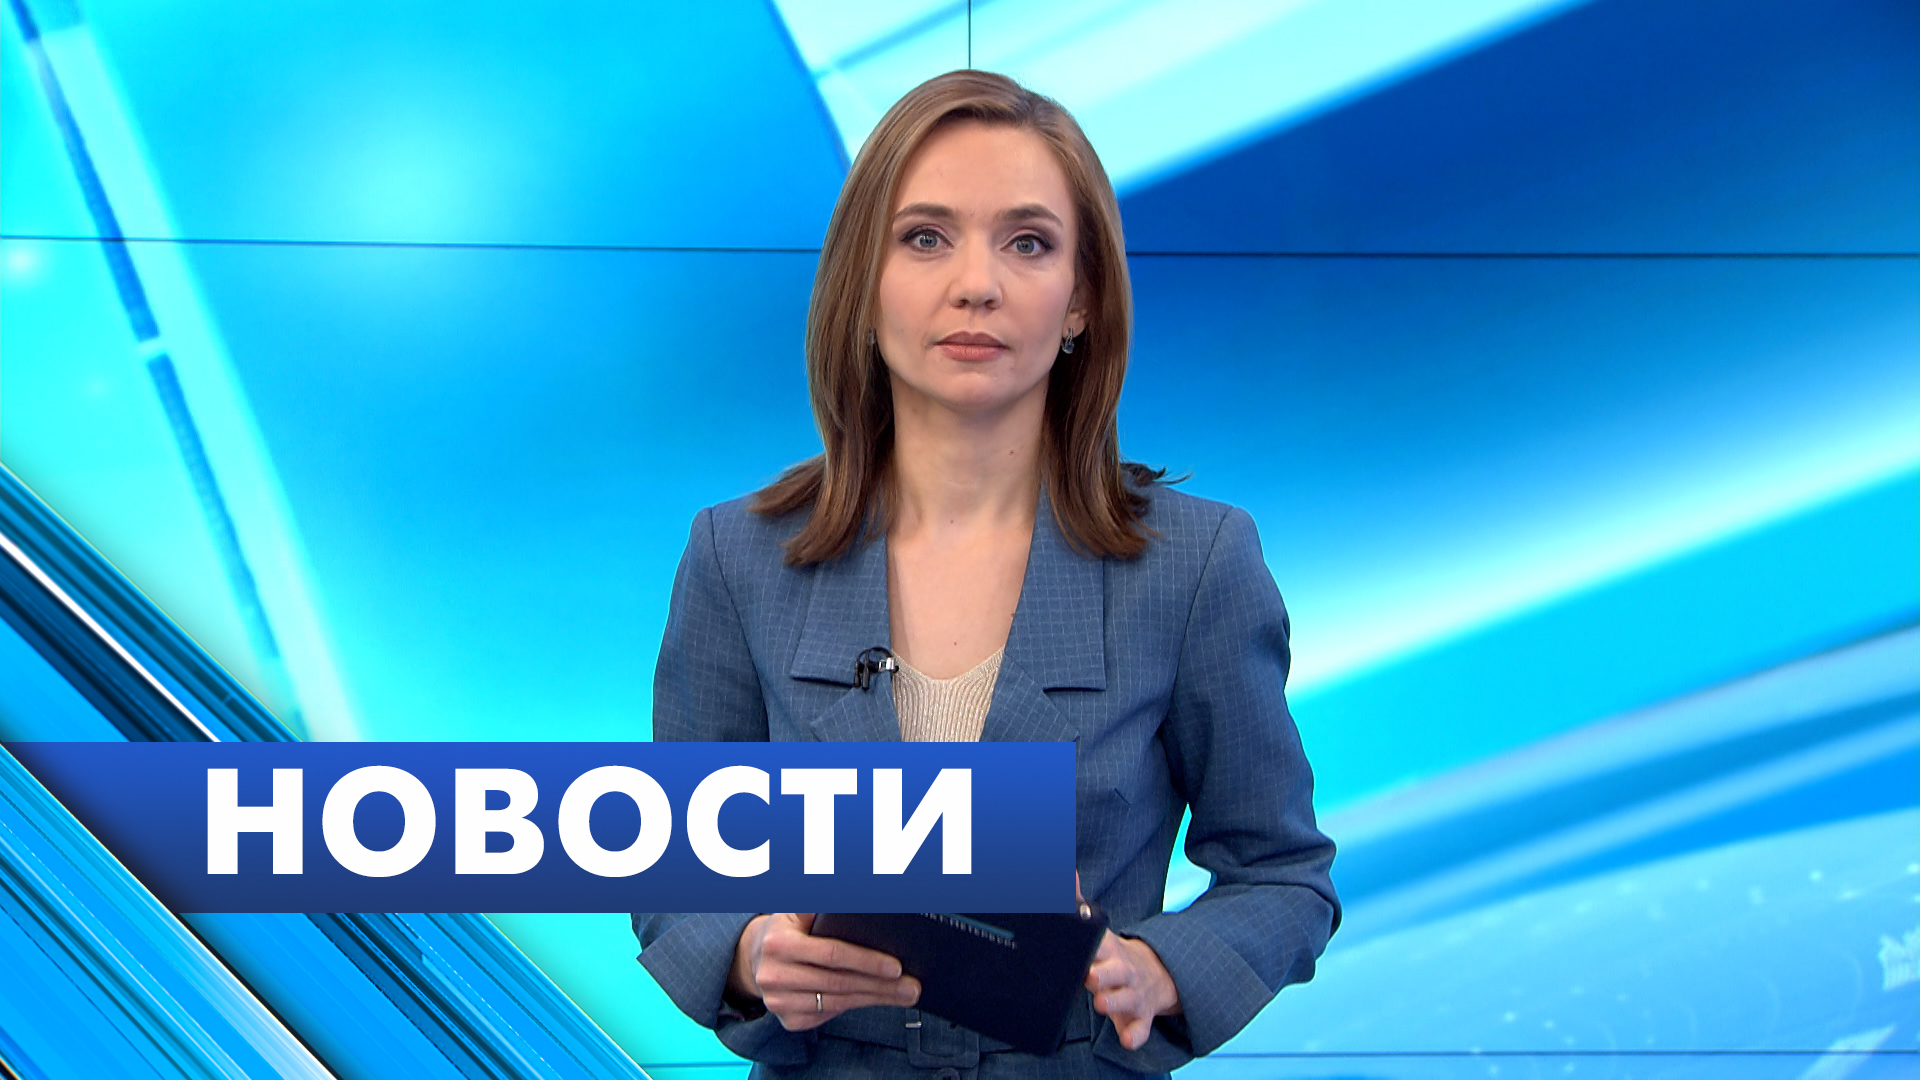 Главные новости Петербурга / 18 декабря